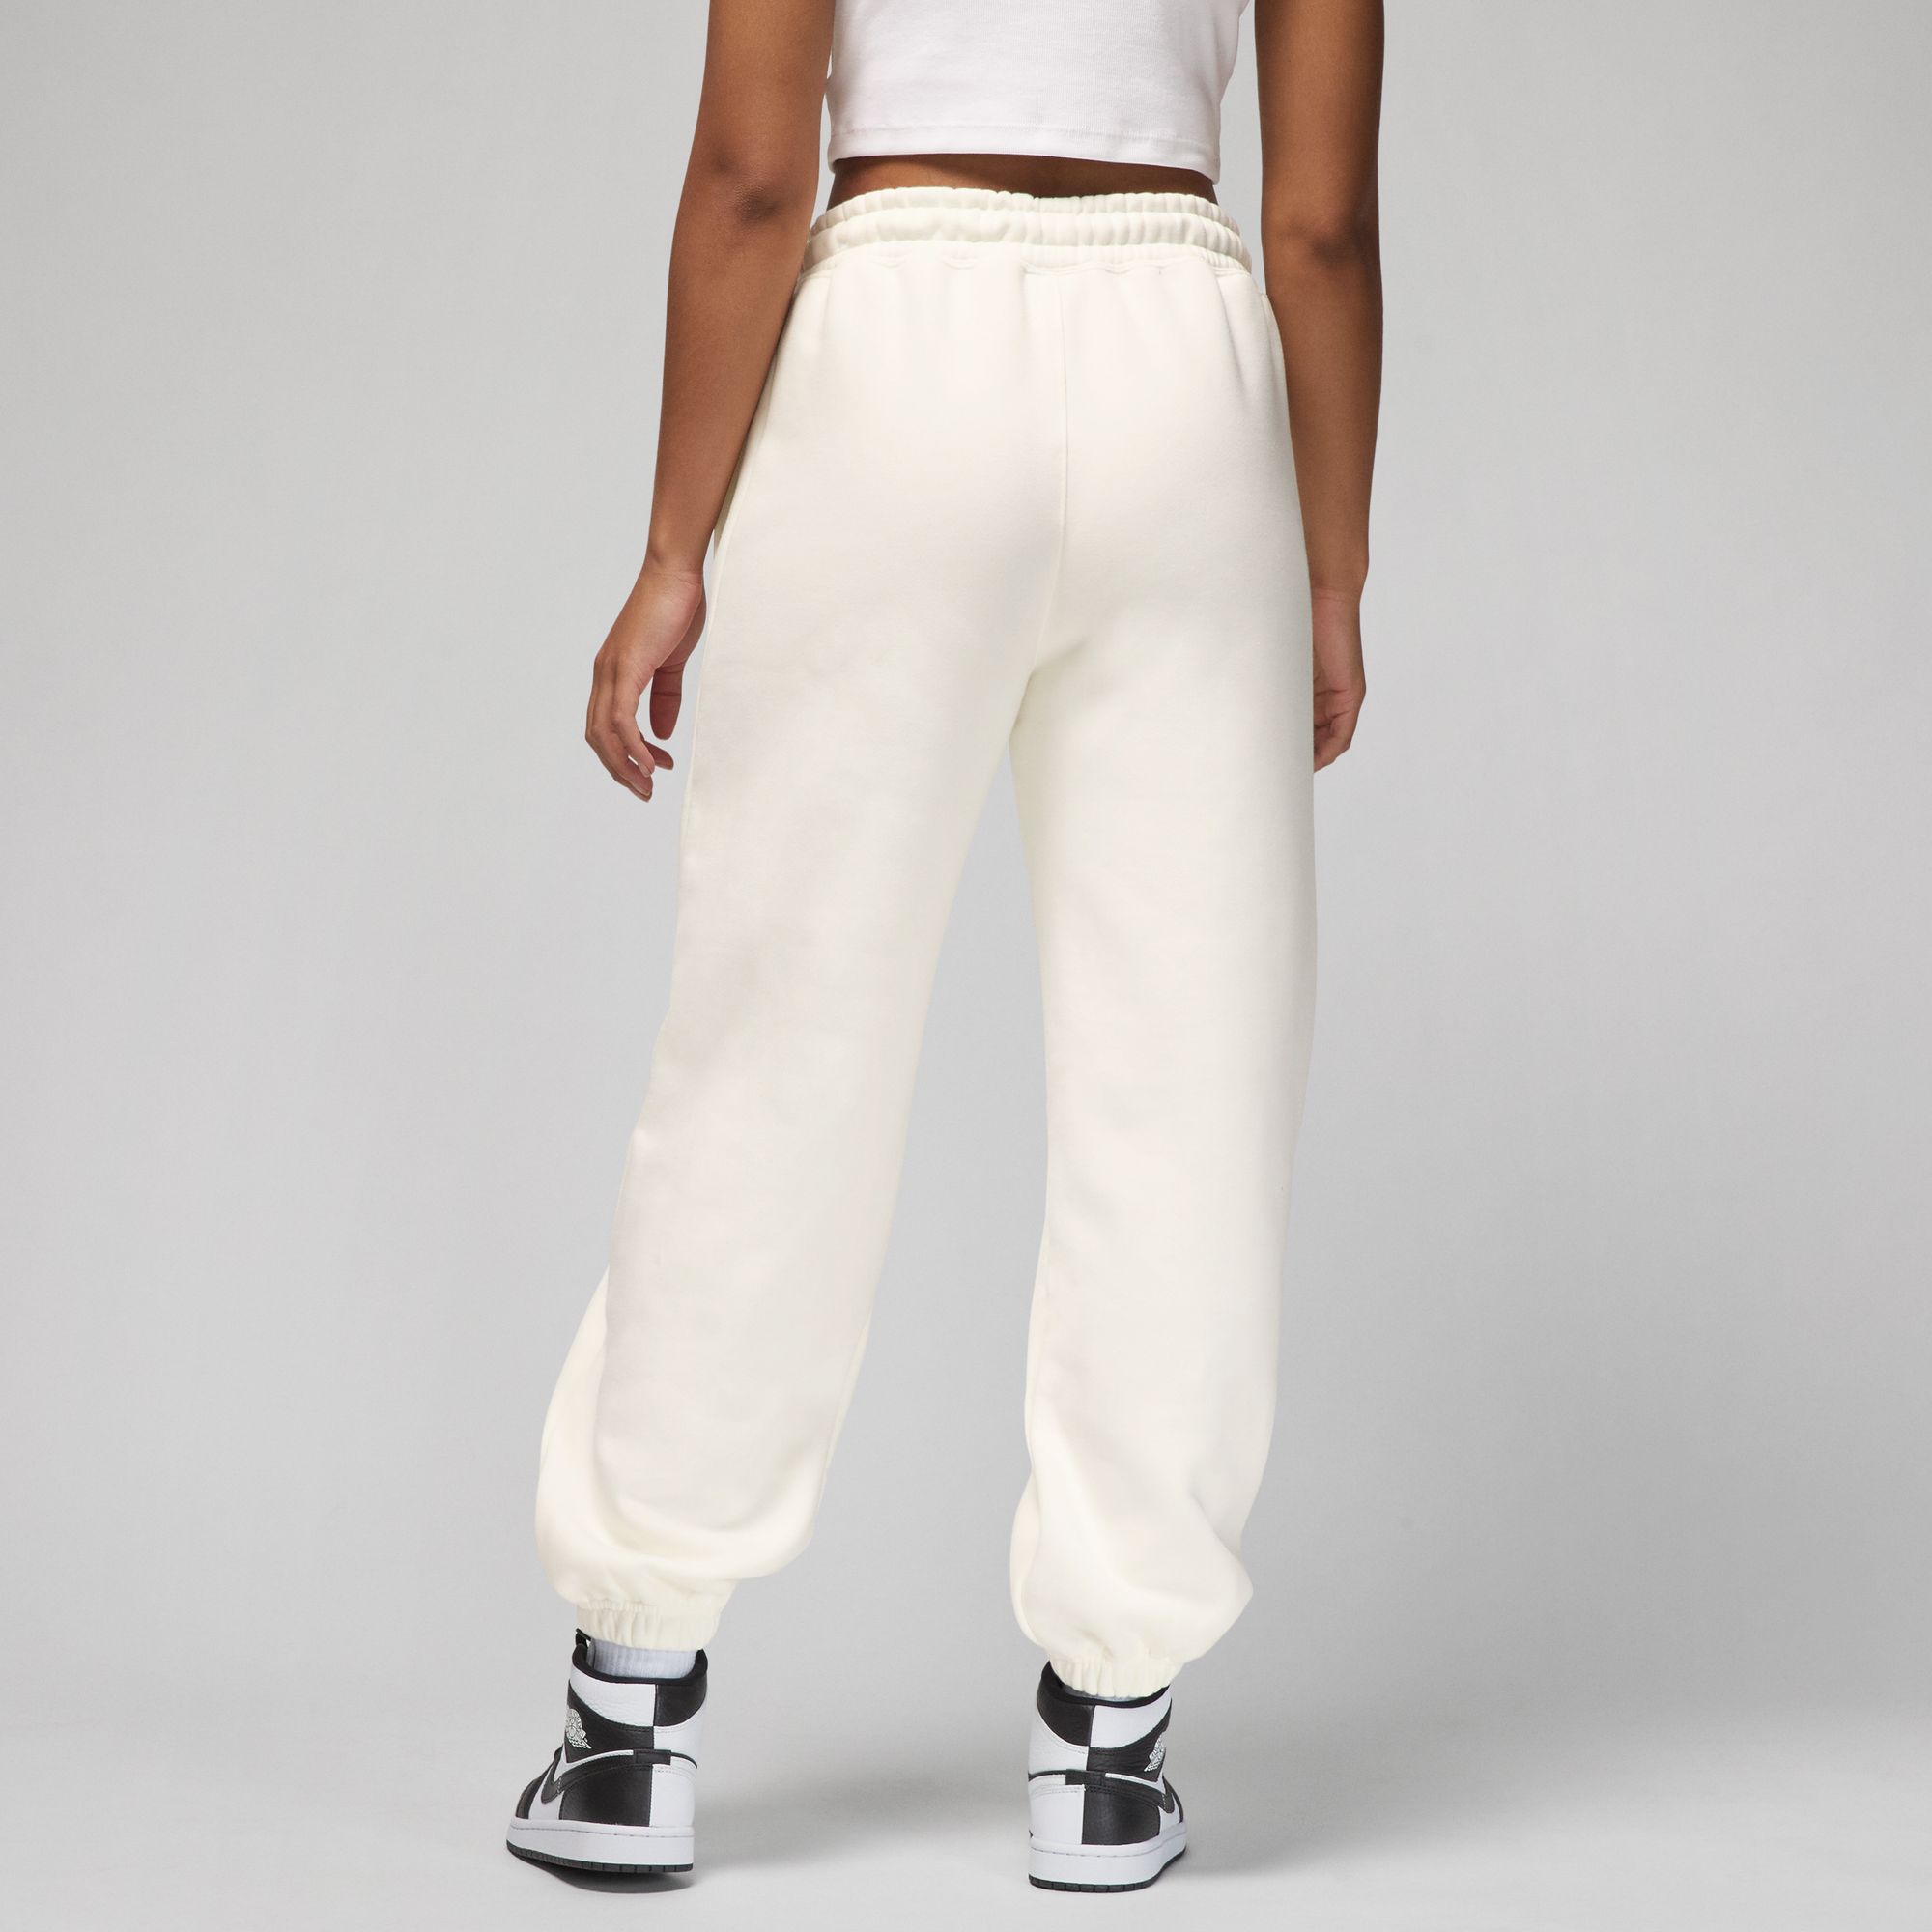 Sportswear Women’s Essentials Fleece Pants - Pearl White